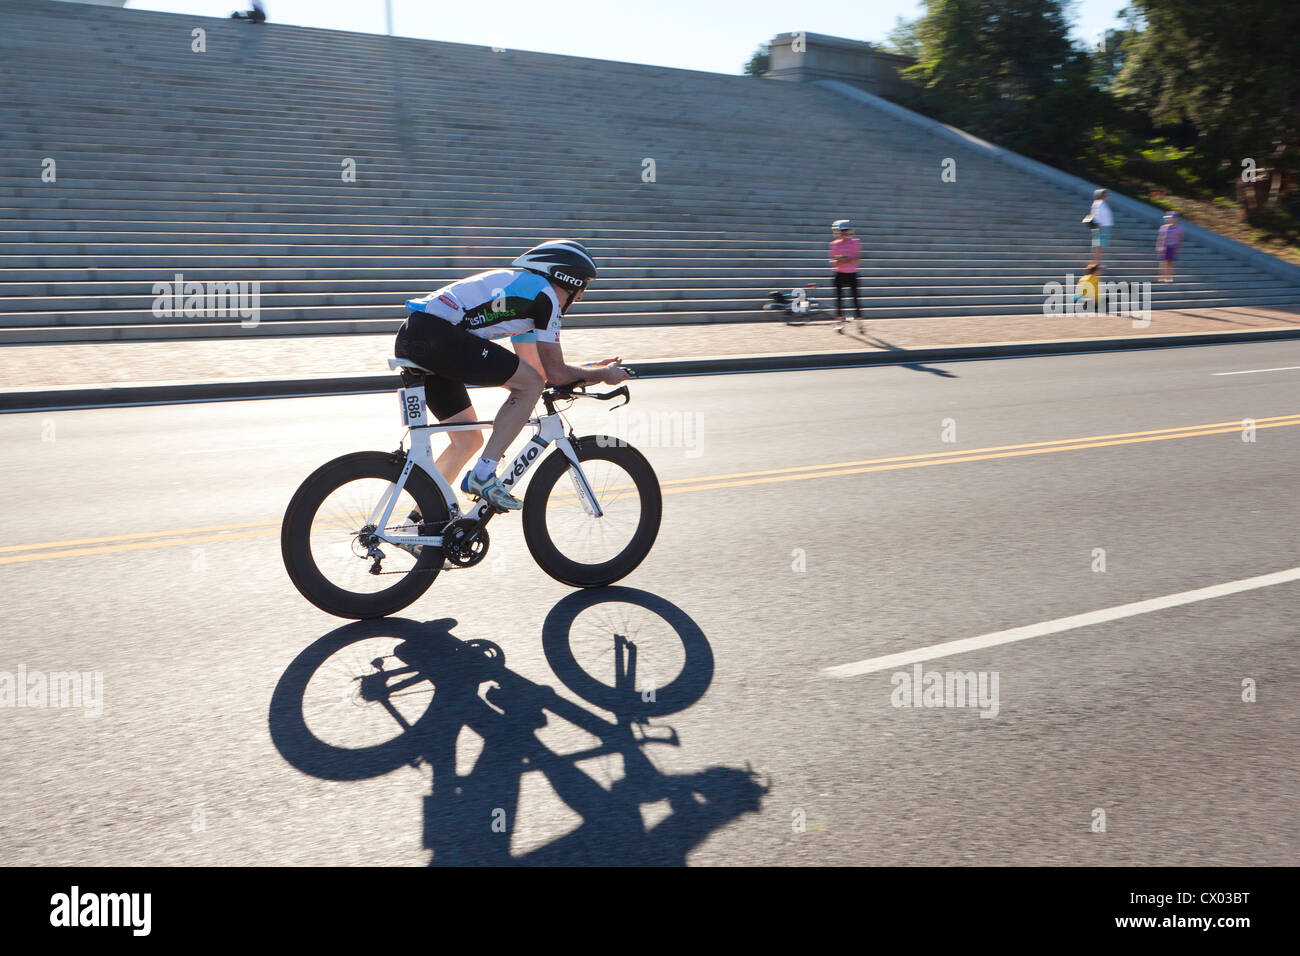 Cyclist racing on road - USA Stock Photo